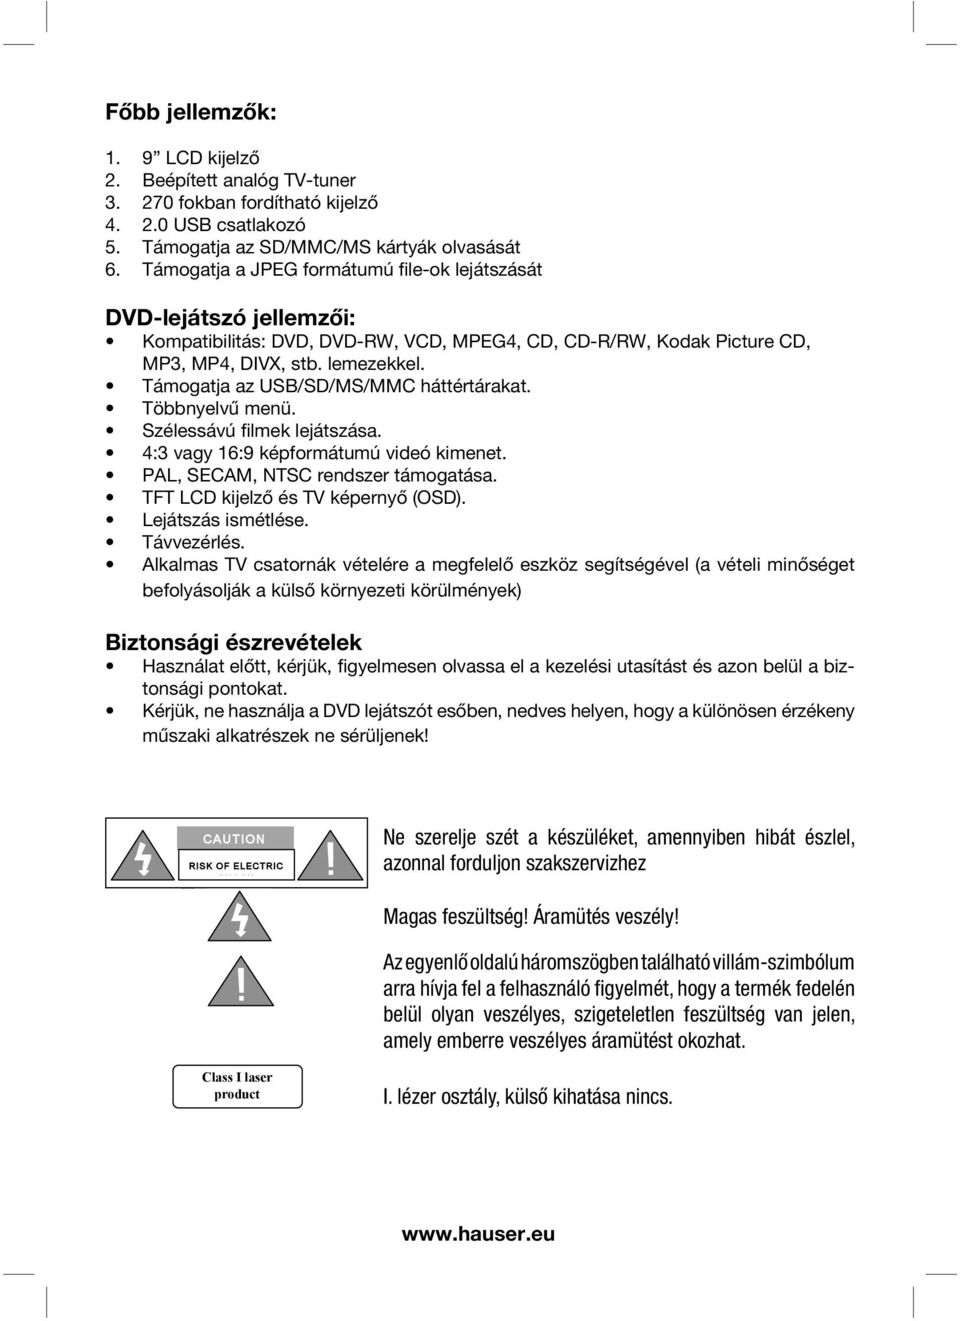 HAUSER. PDVD-969 Hordozható DVD lejátszó - PDF Ingyenes letöltés